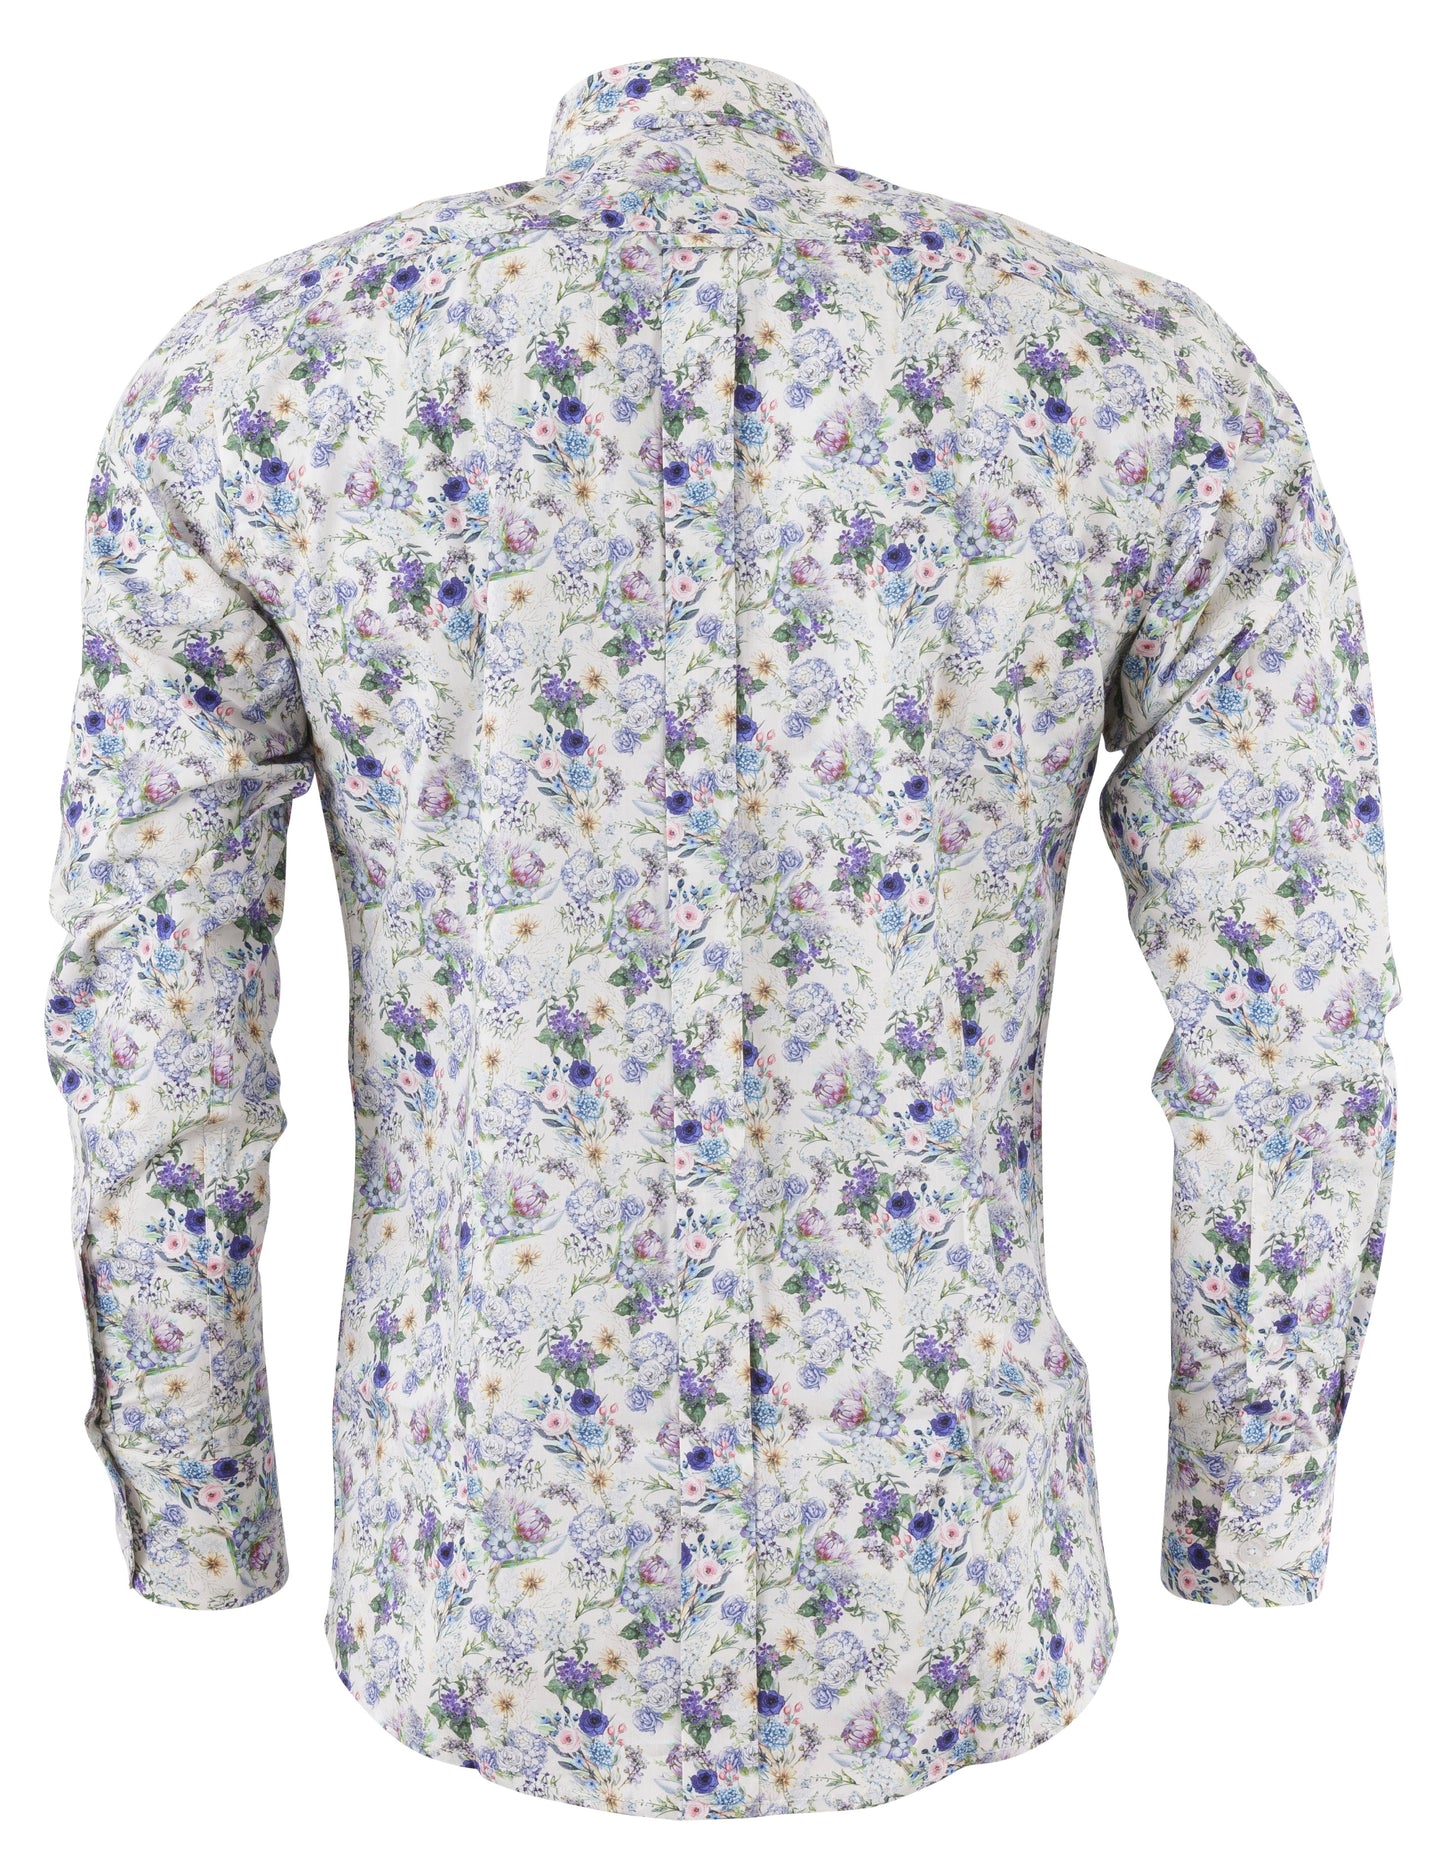 Relco platinum camisas blancas con botones florales para hombre